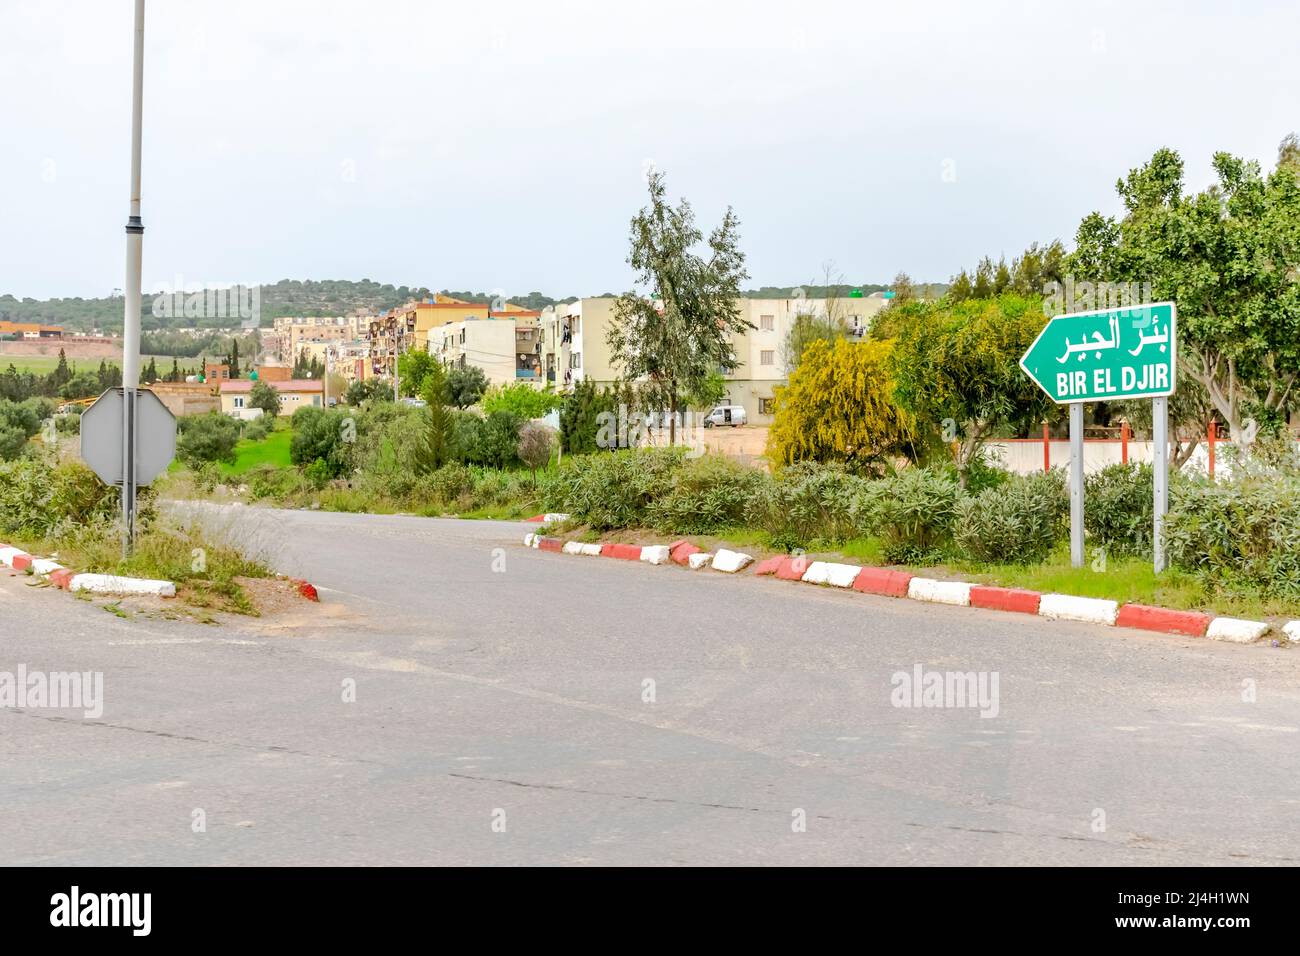 Panneau de signalisation routière BIR El Djir destination en caractères blancs français et arabes. Intersection de routes, trottoir en herbe verte, arbres et bâtiments d'habitation Banque D'Images